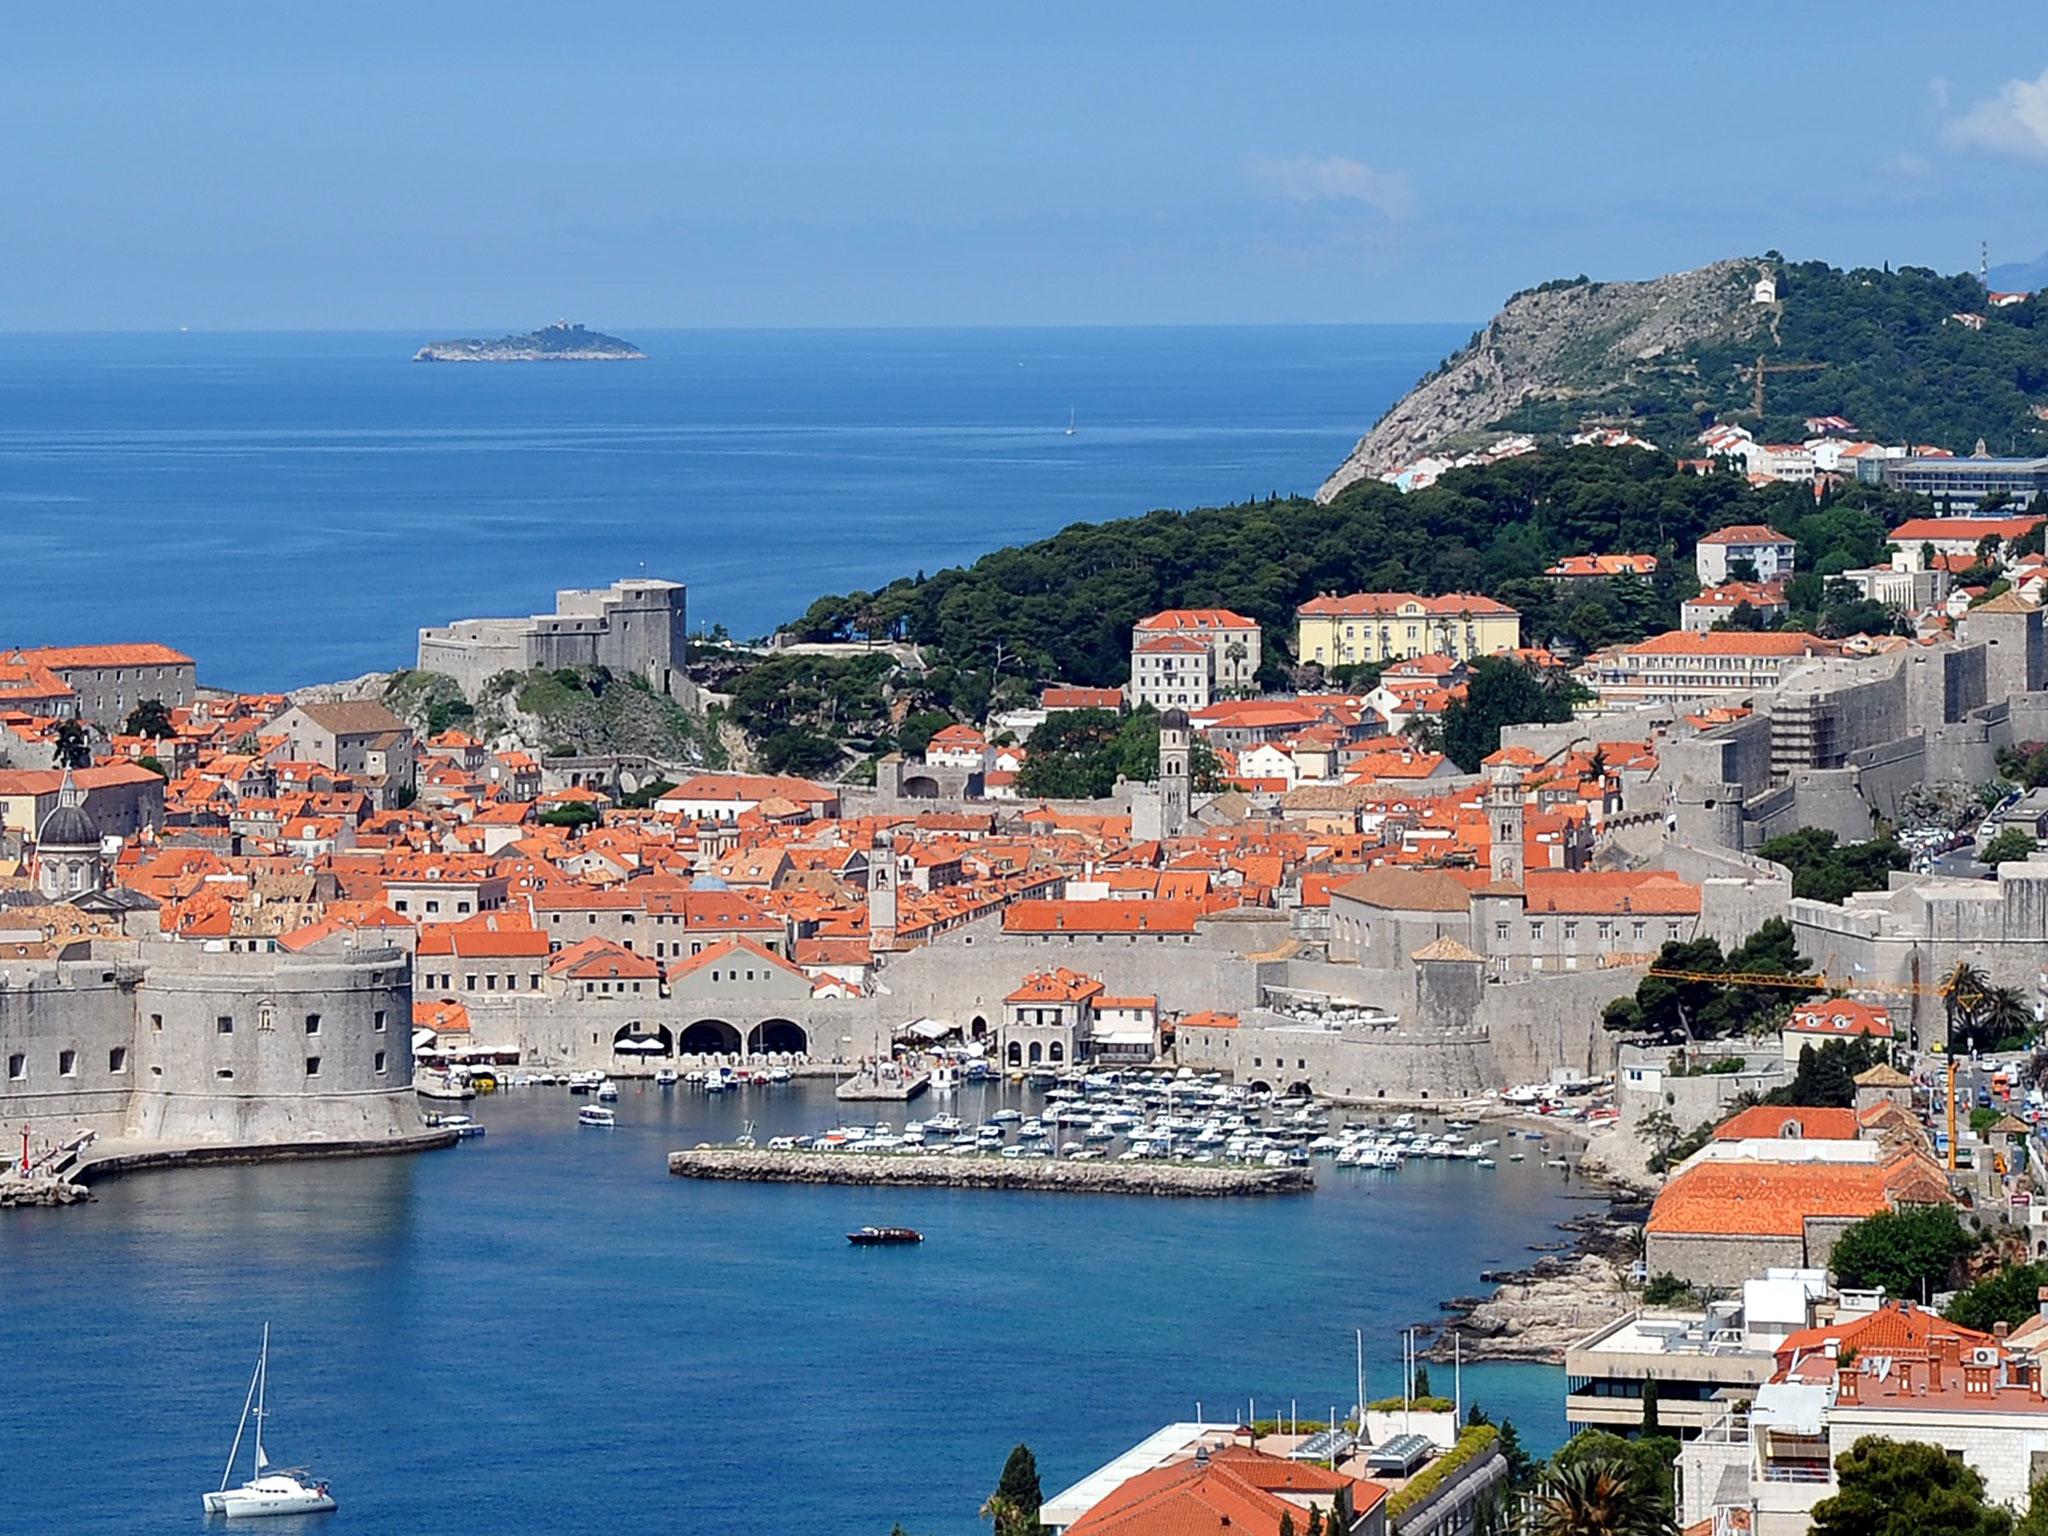 Go digital in Dubrovnik